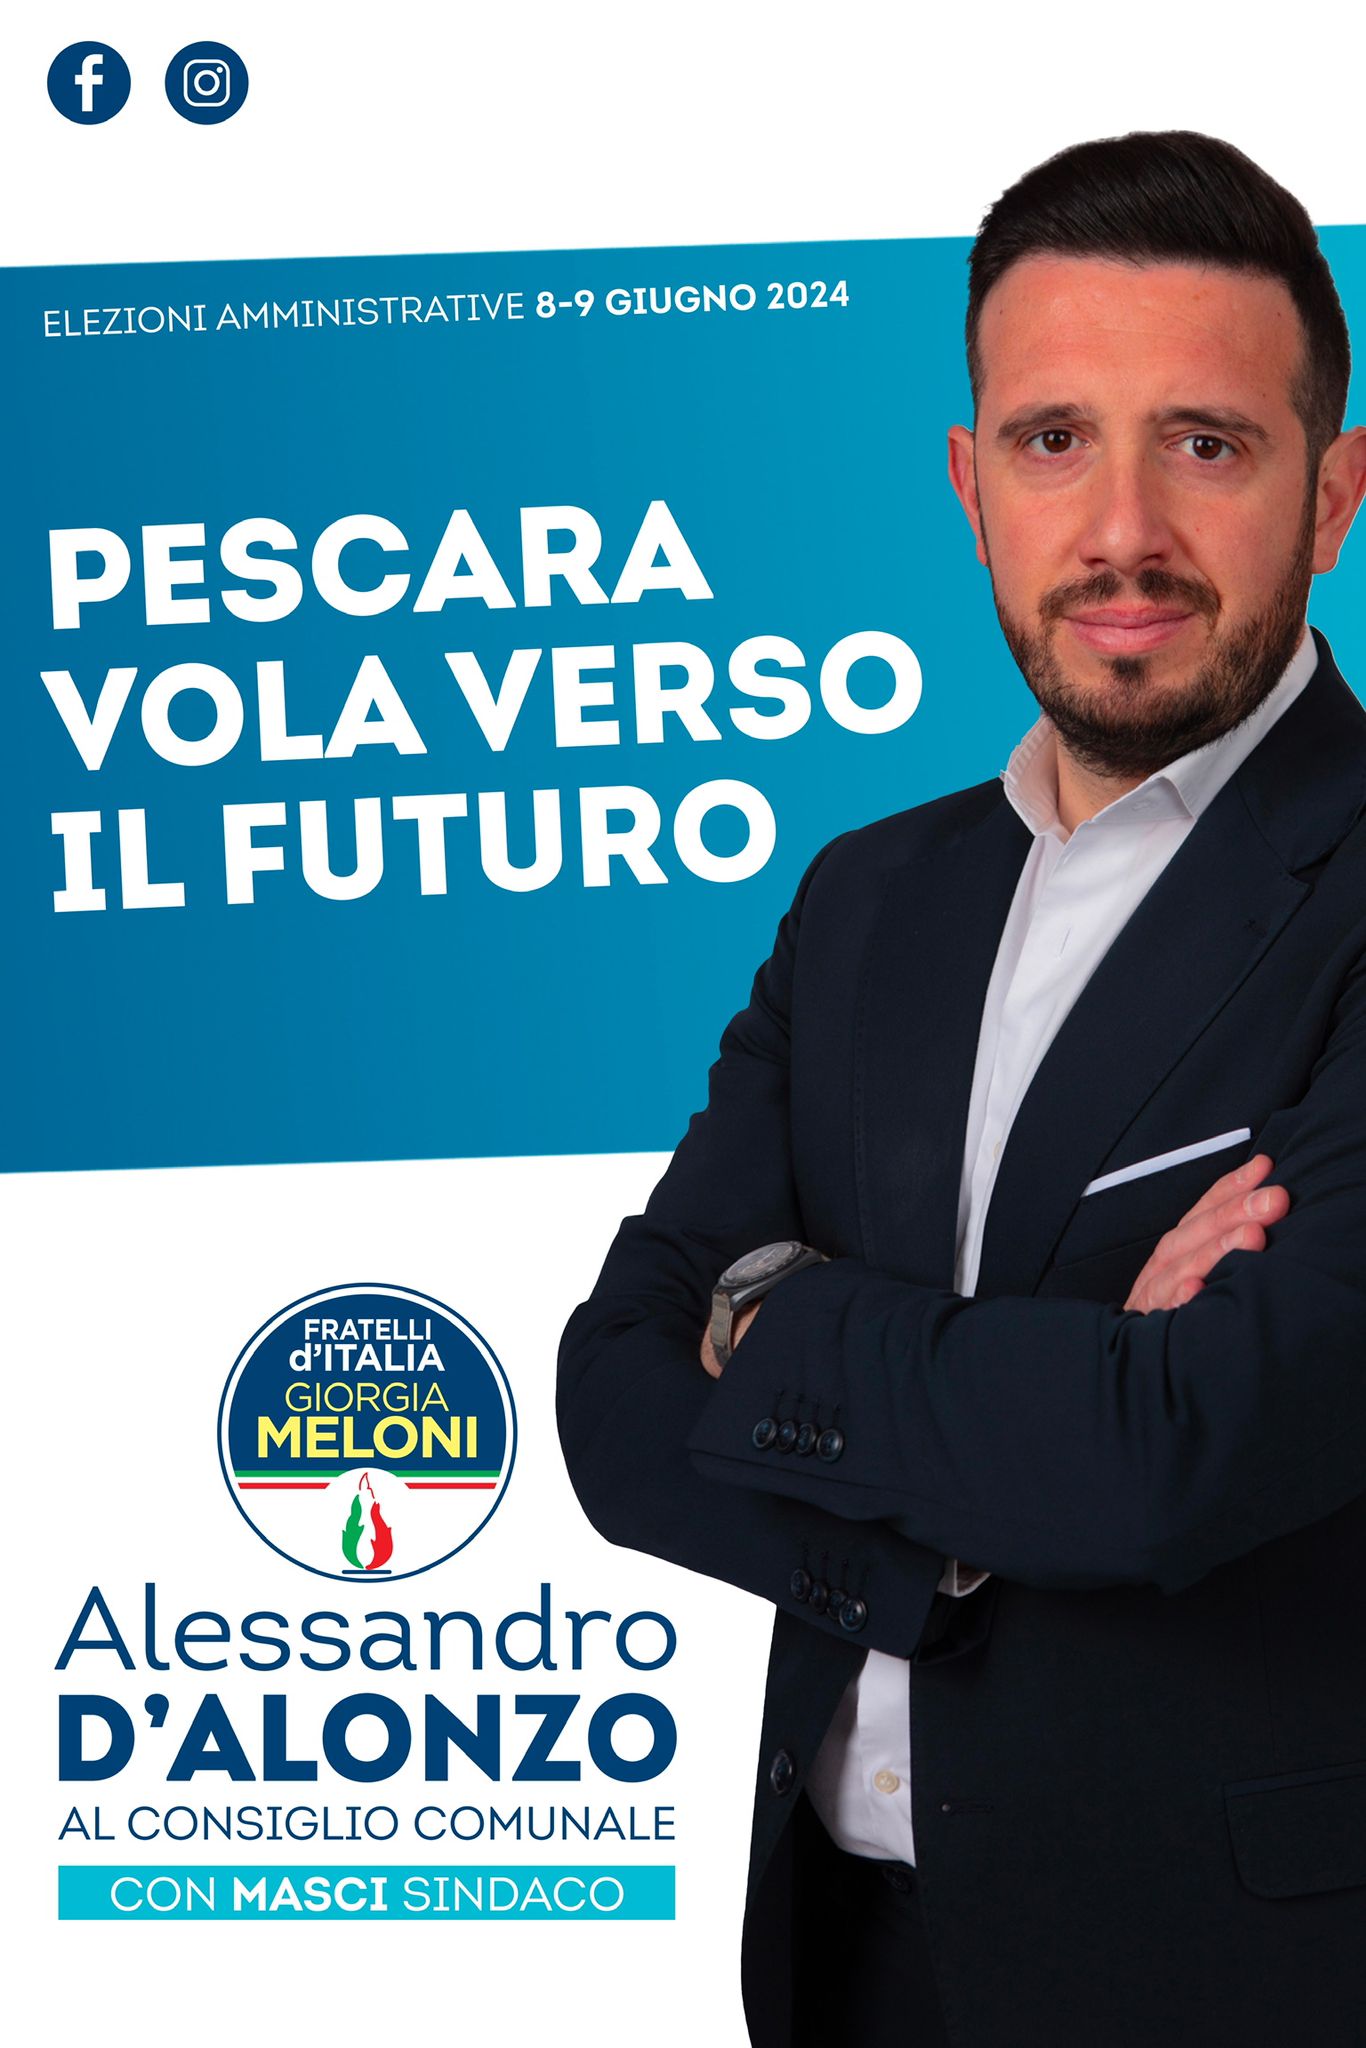 Alessandro D’Alonzo